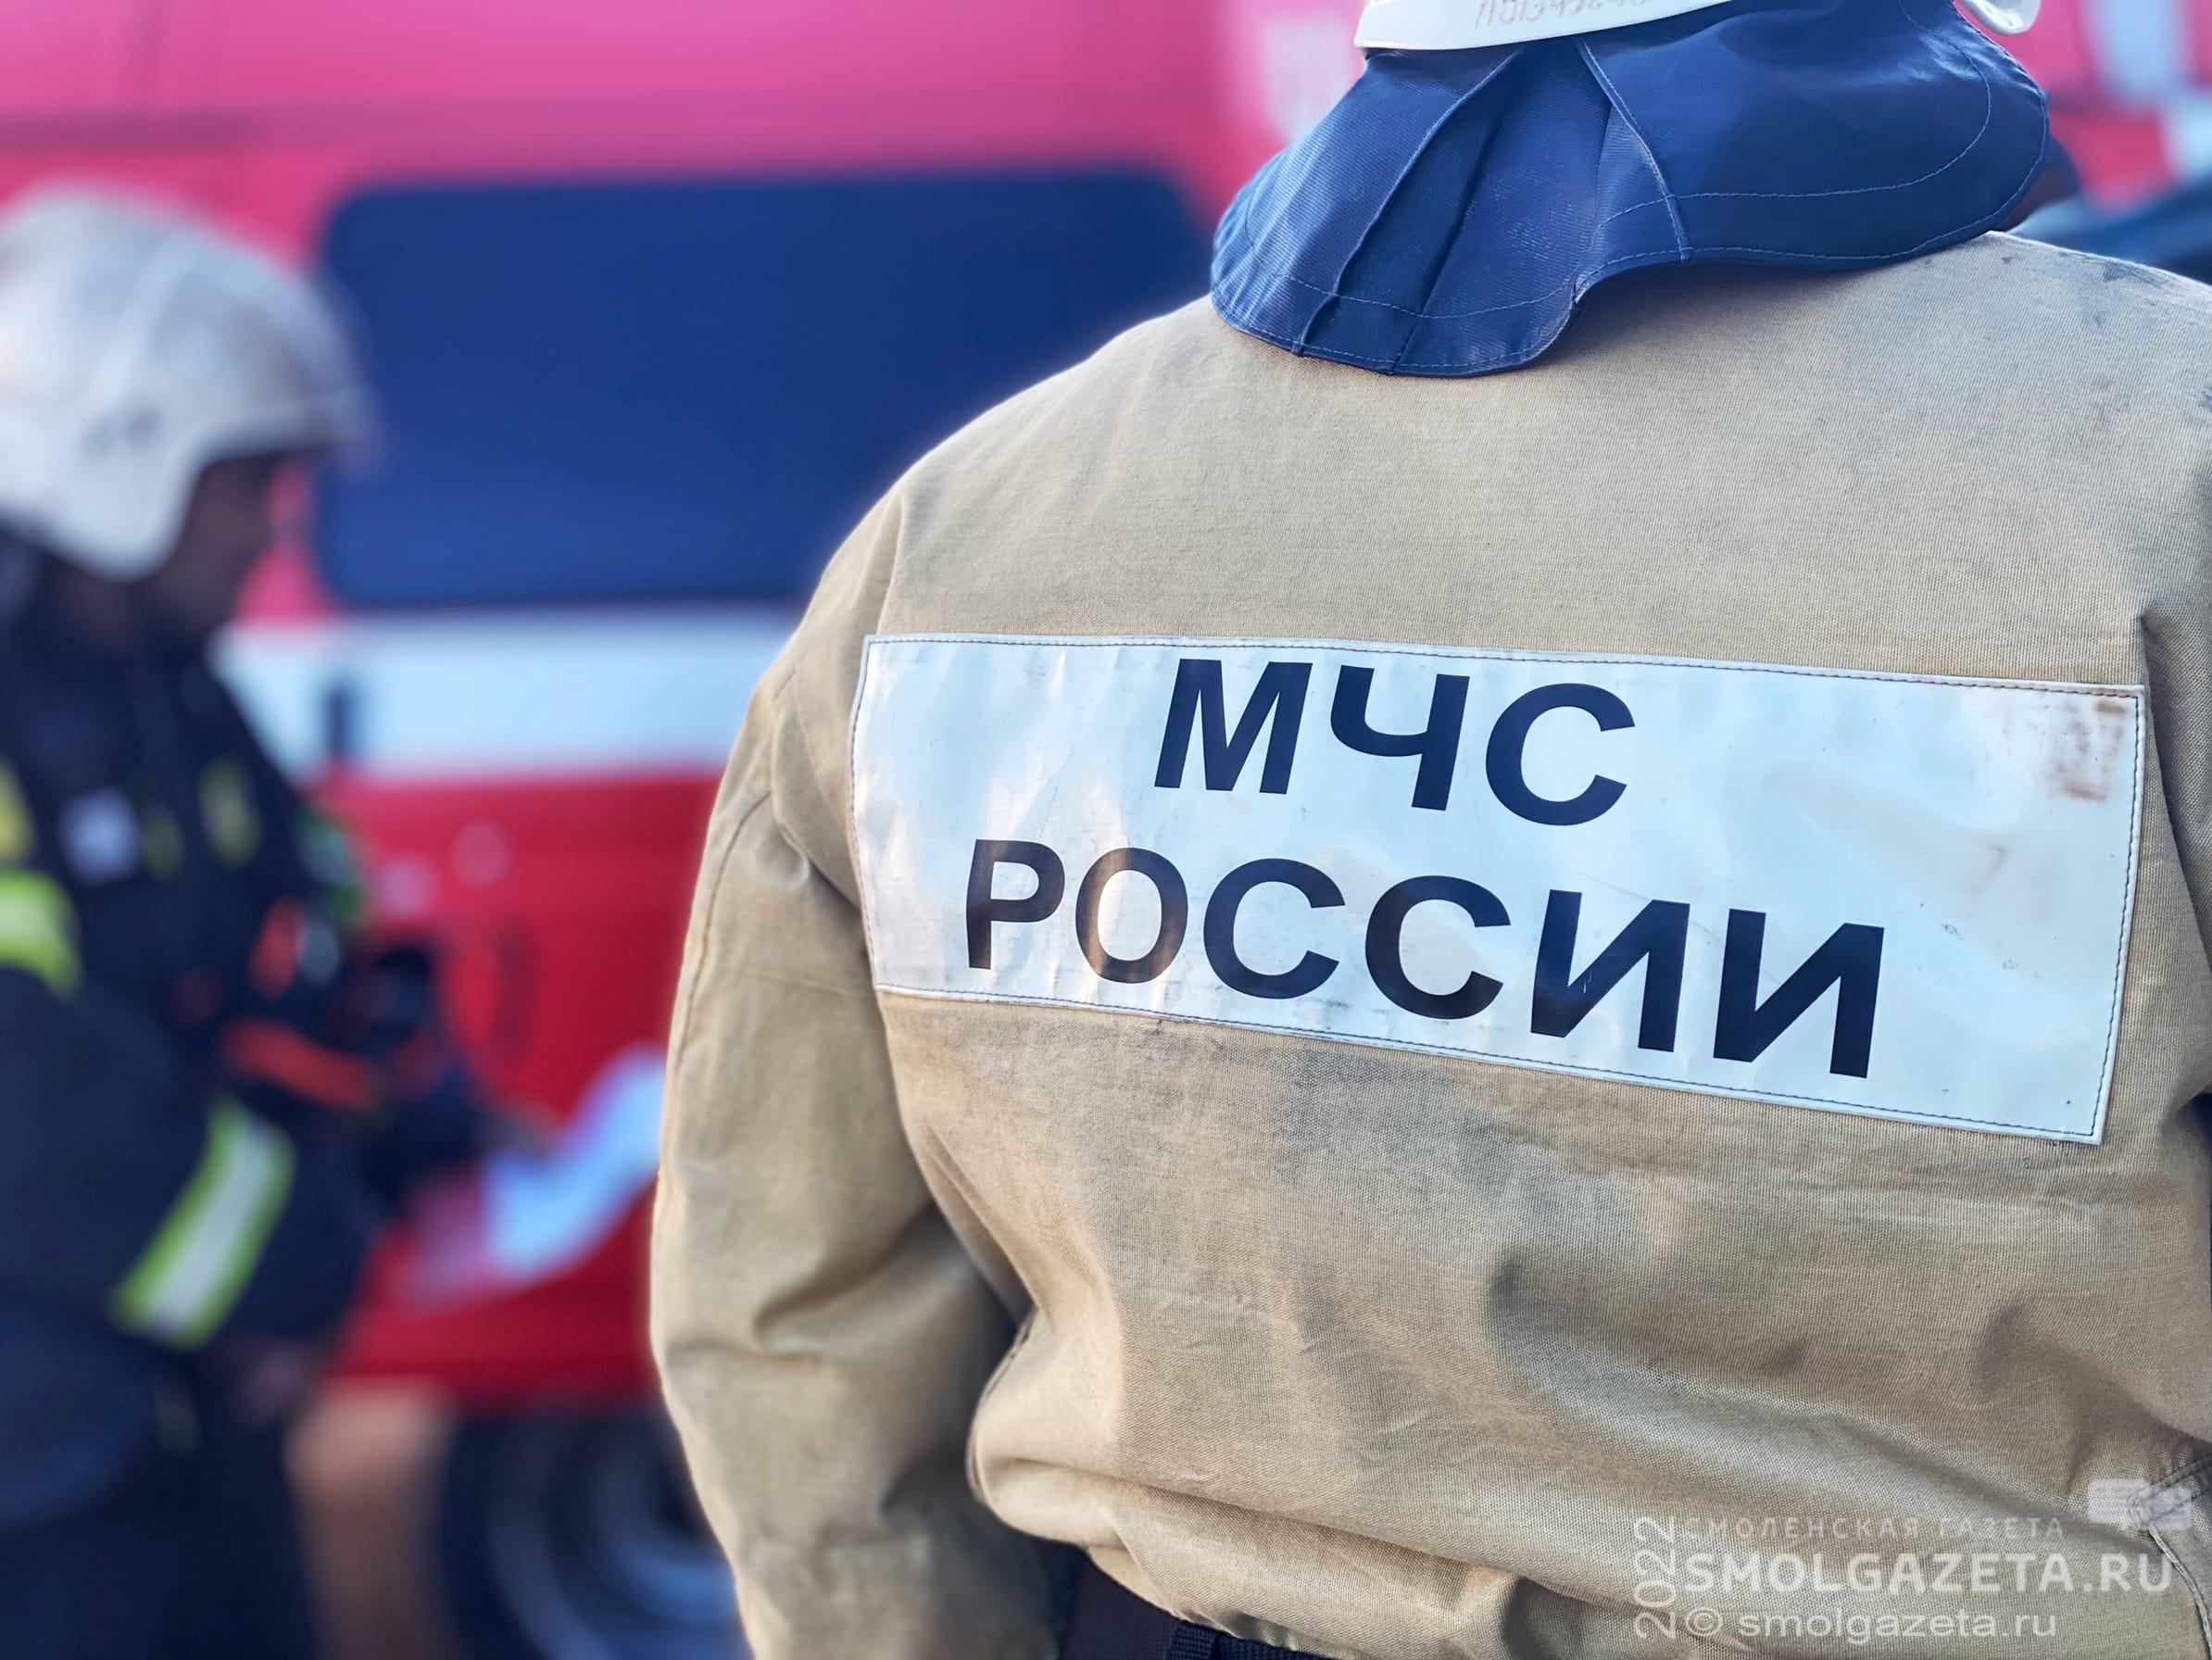 Утром в Смоленске на улице Автозаводской случился пожар в квартире